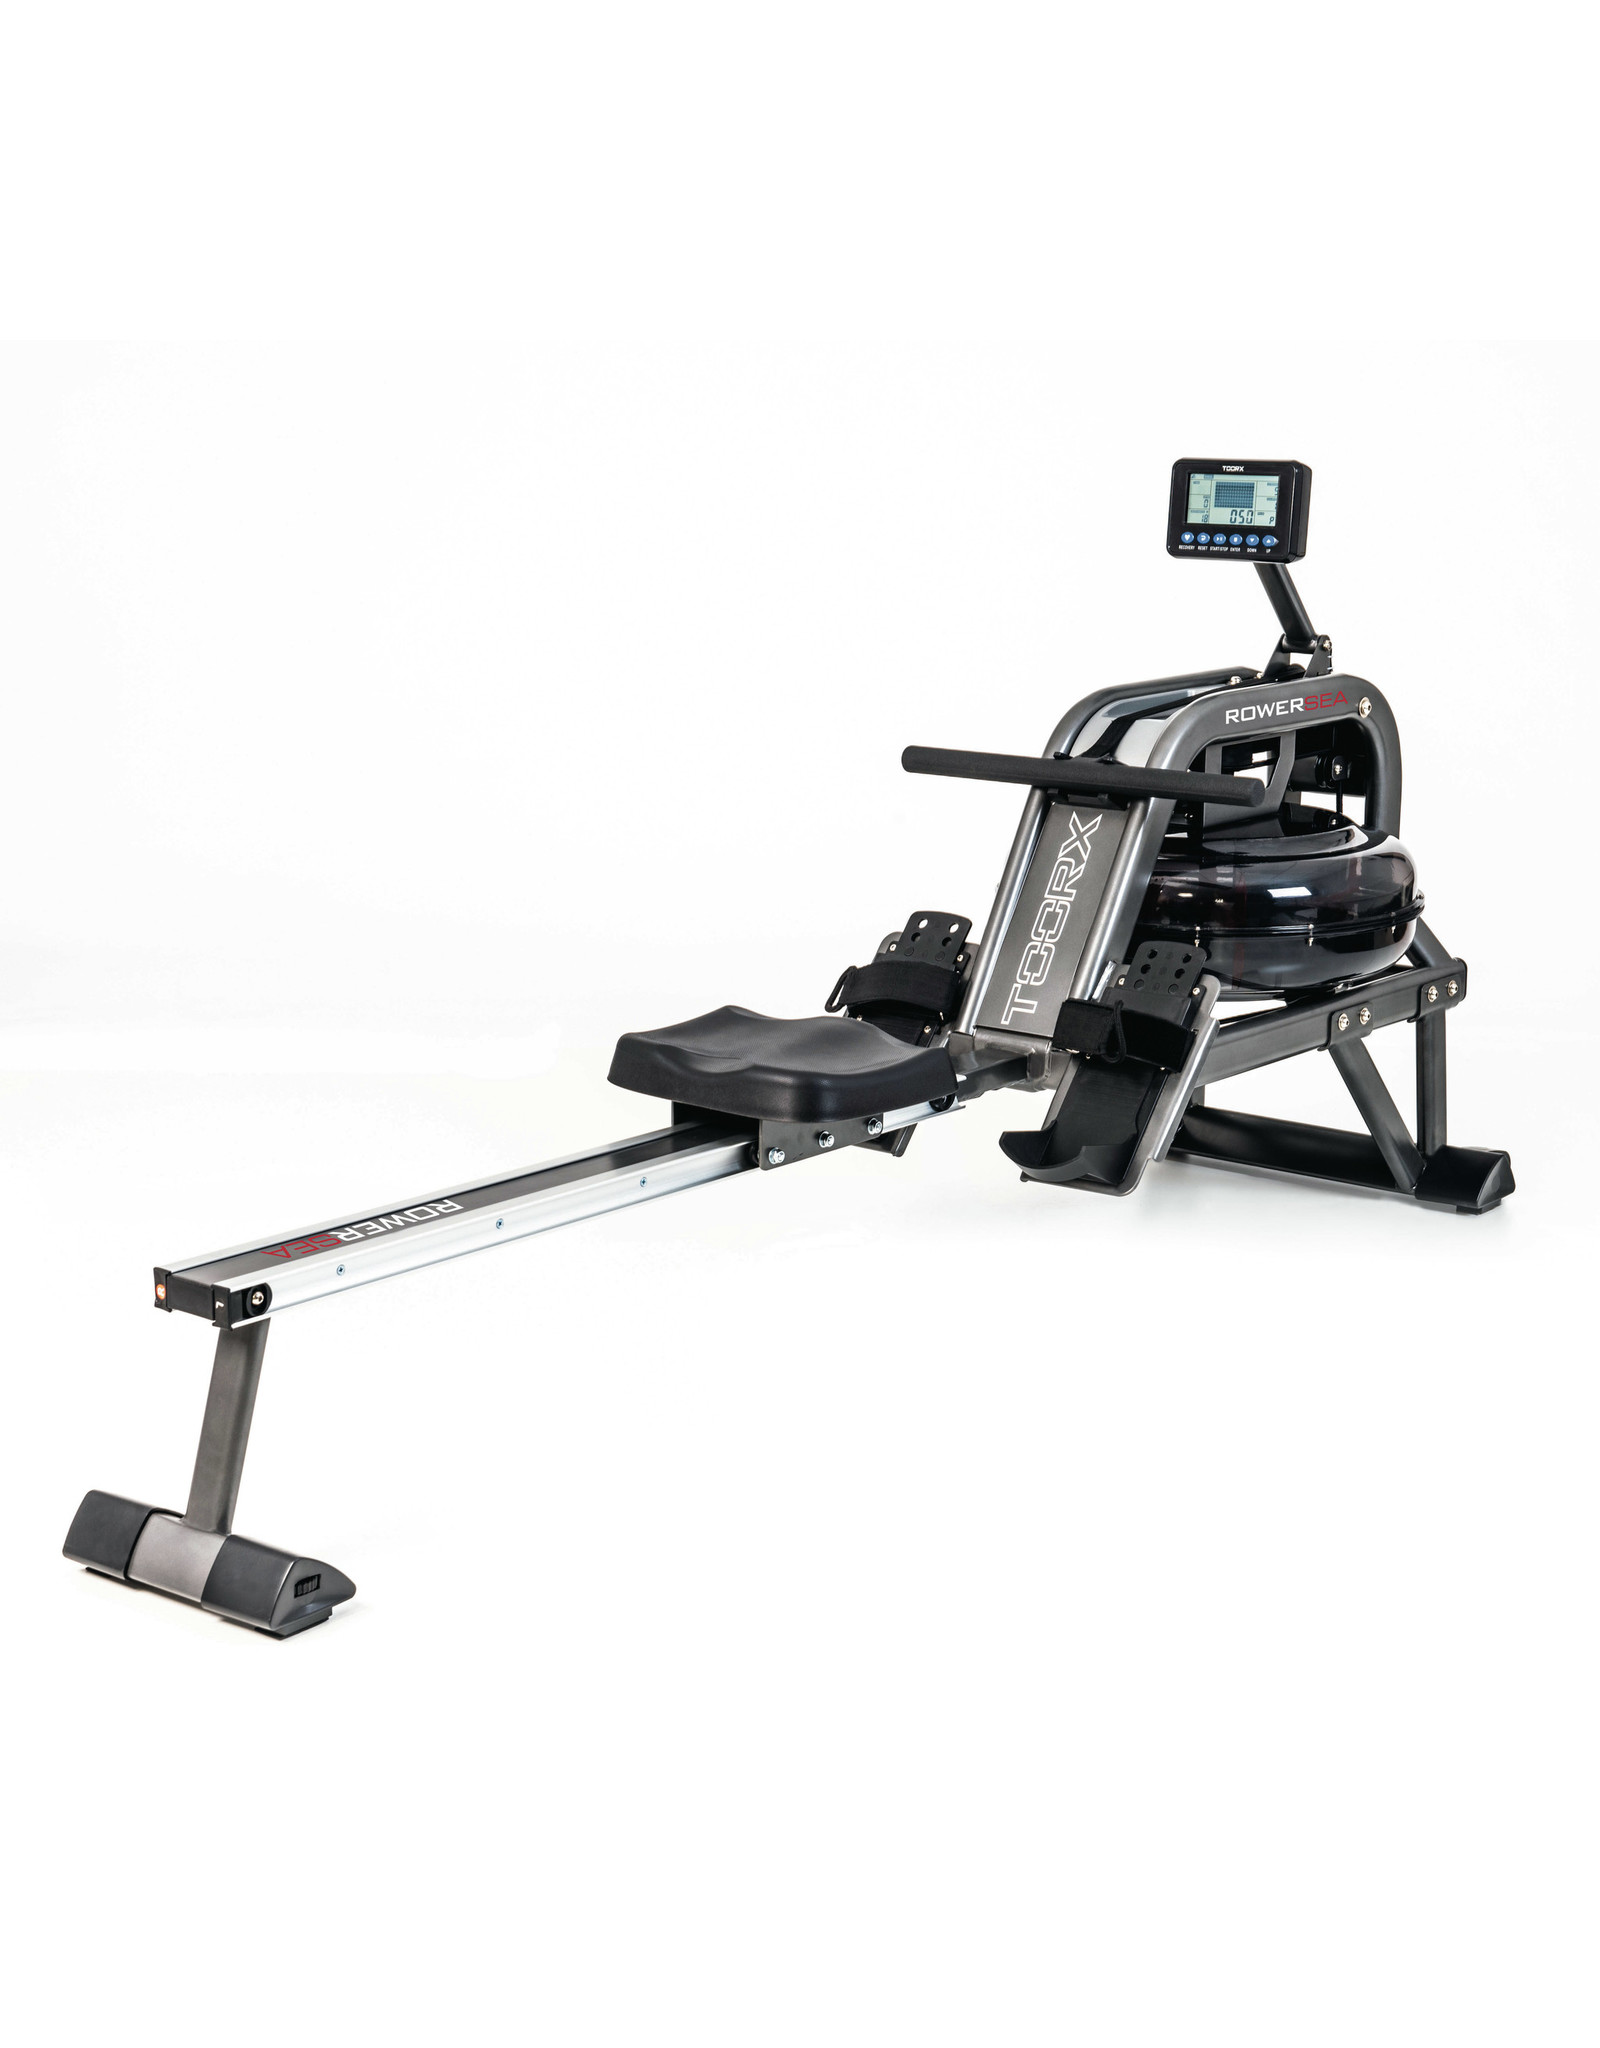 Toorx Fitness Toorx ROWER-SEA waterroeier - 6 weerstanden - hartslagmeting - 130 kg gebruikersgewicht